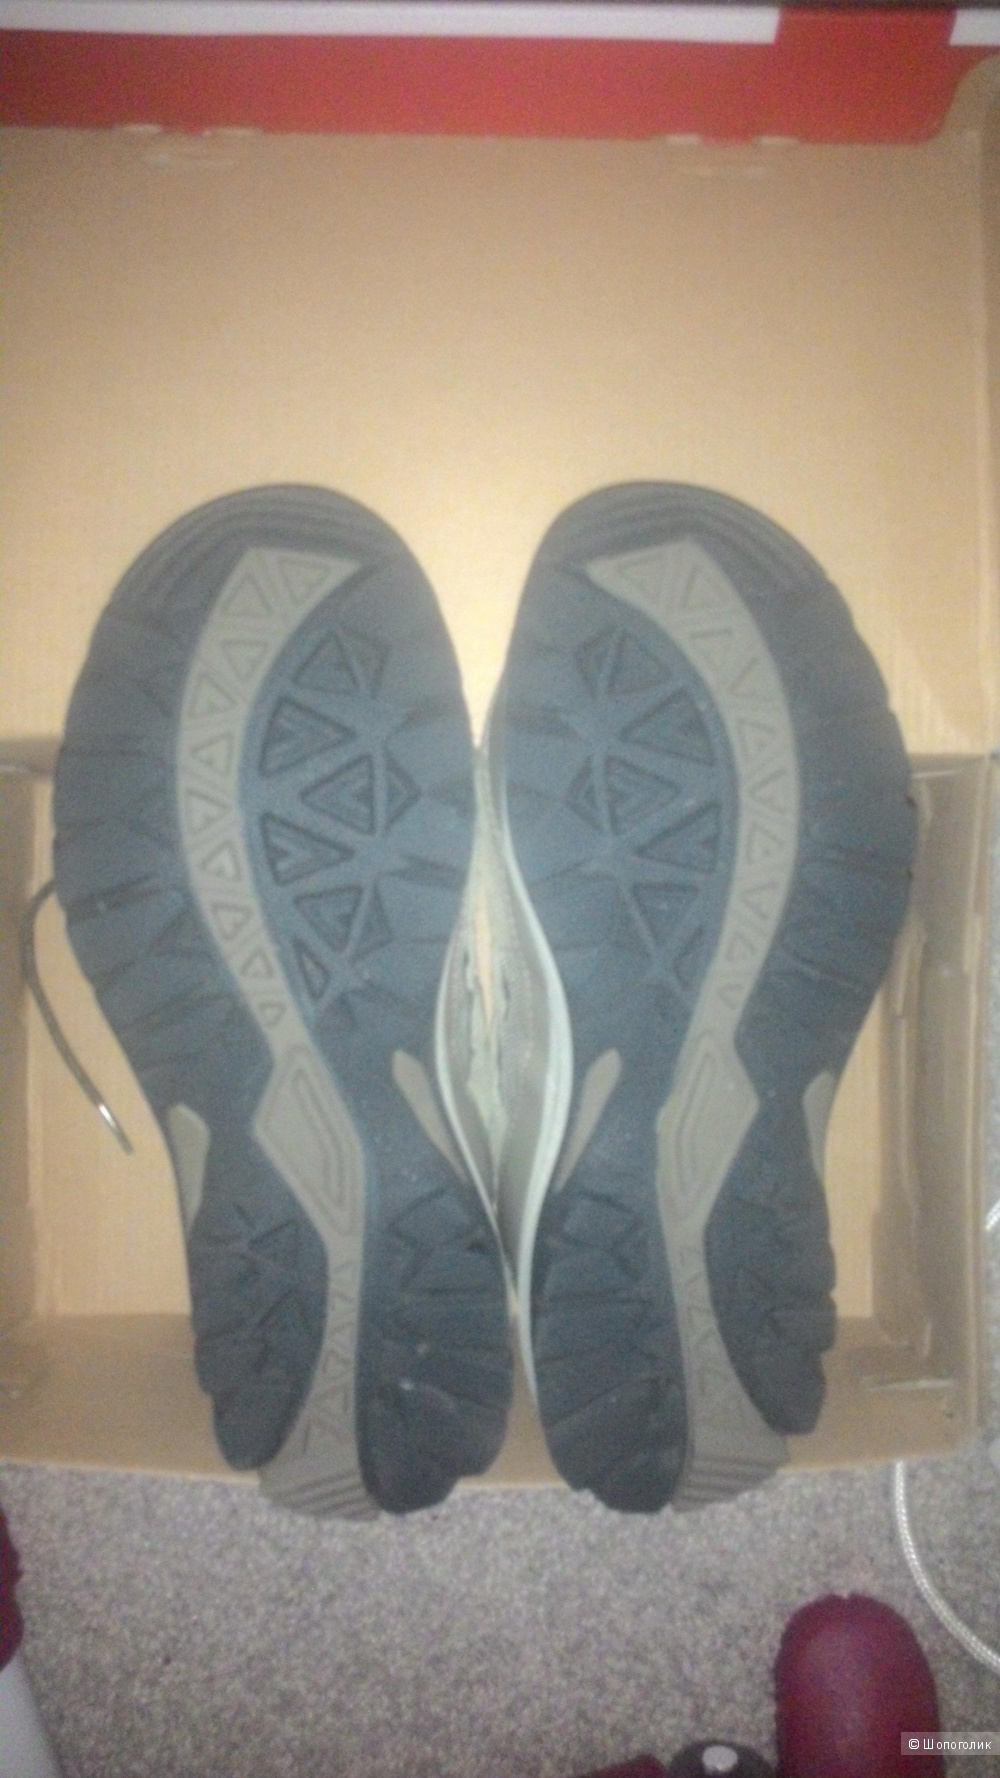 Новые кроссовки NEW BALANCE 769, серые, на широкую ногу, р-р EUR 40,5/UK 7/US 9 WIDE D, с небольшим дефектом.